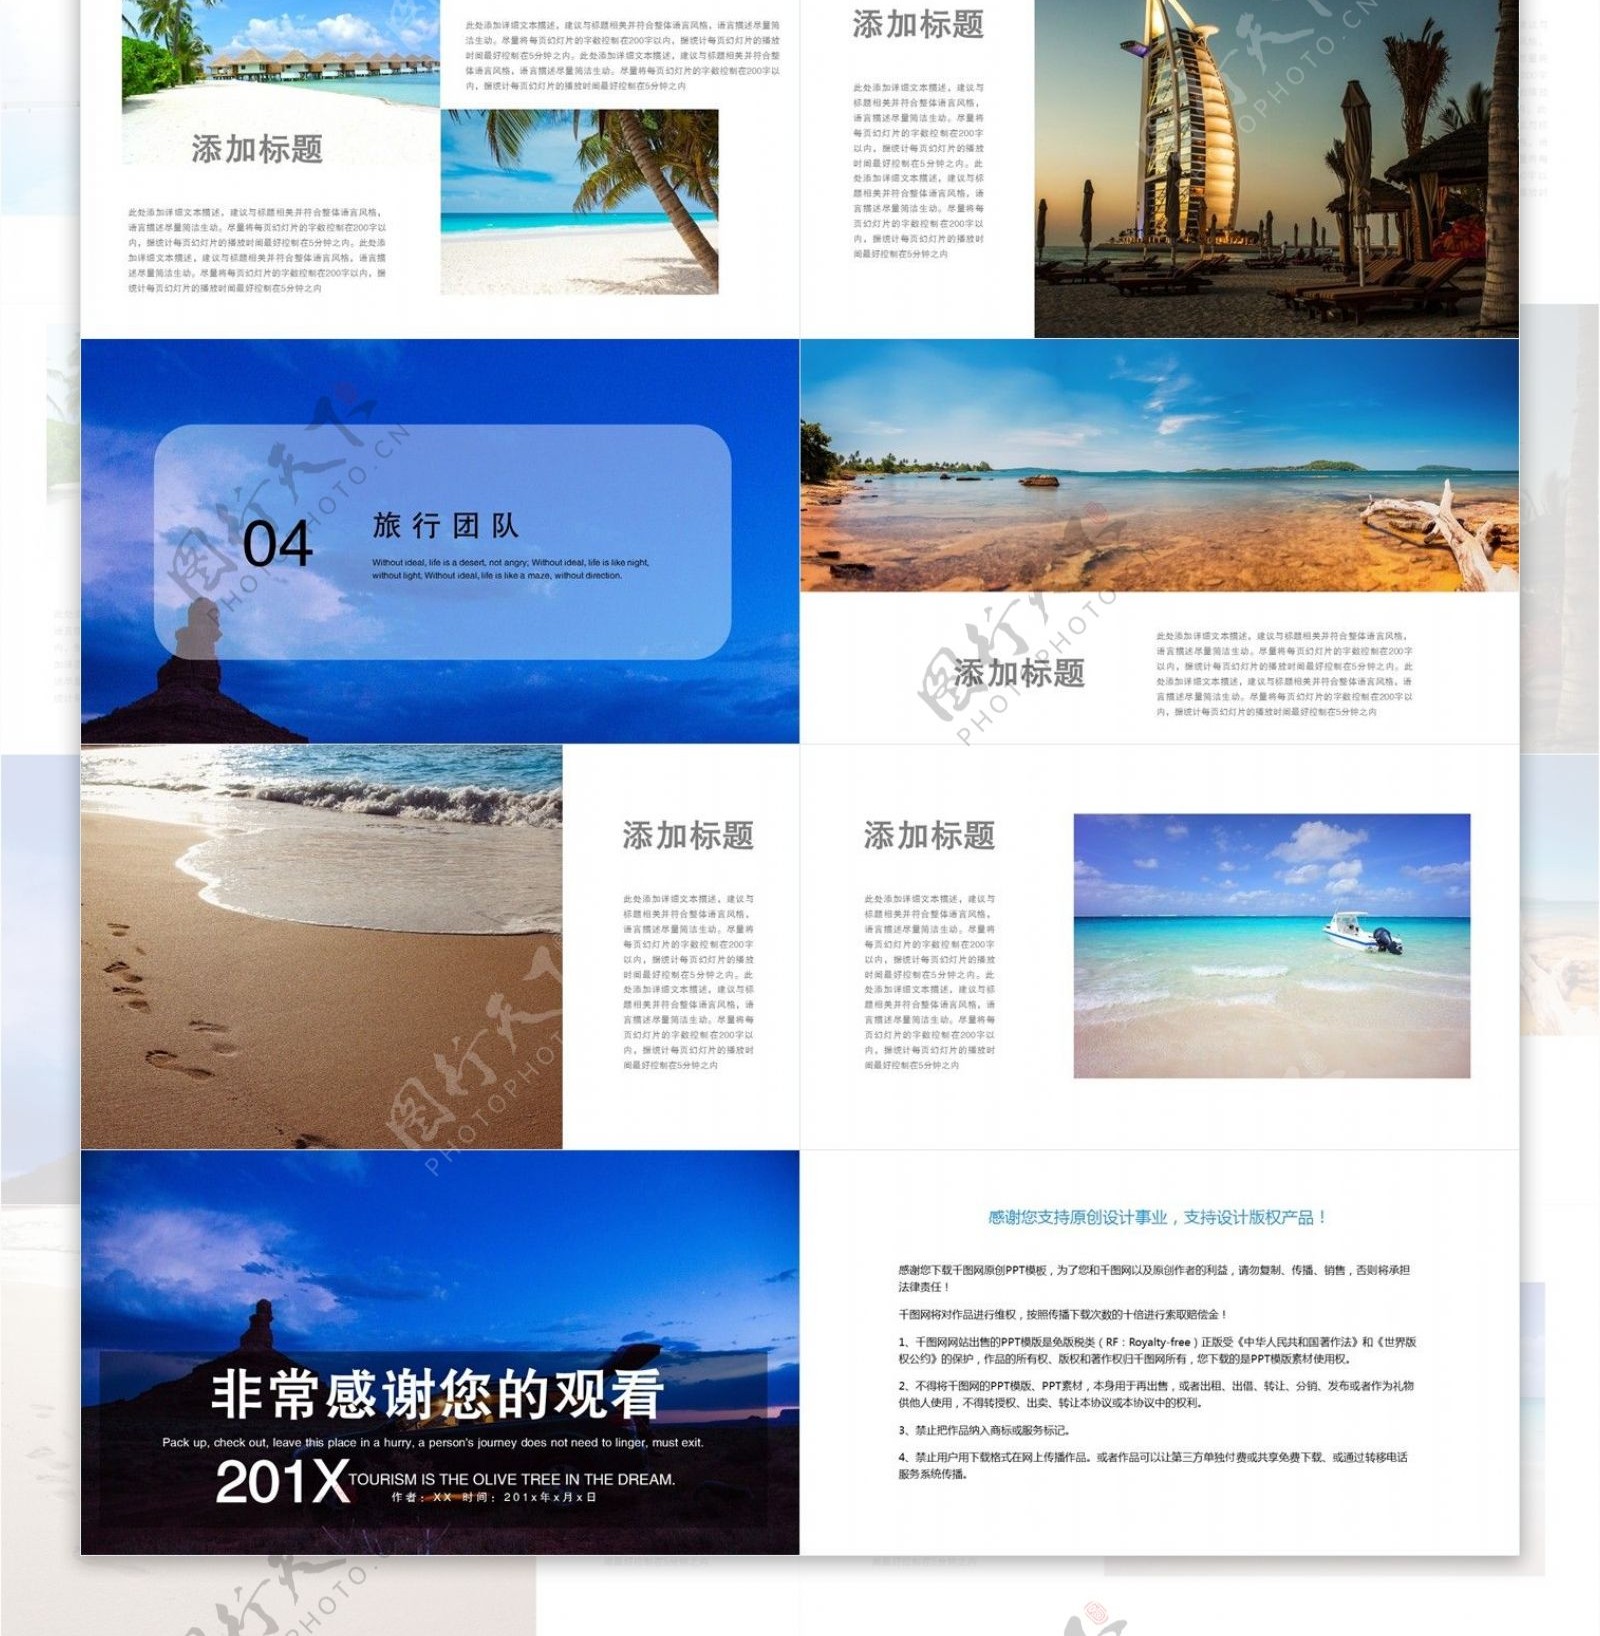 39清新简约旅行画册宣传PPT模板